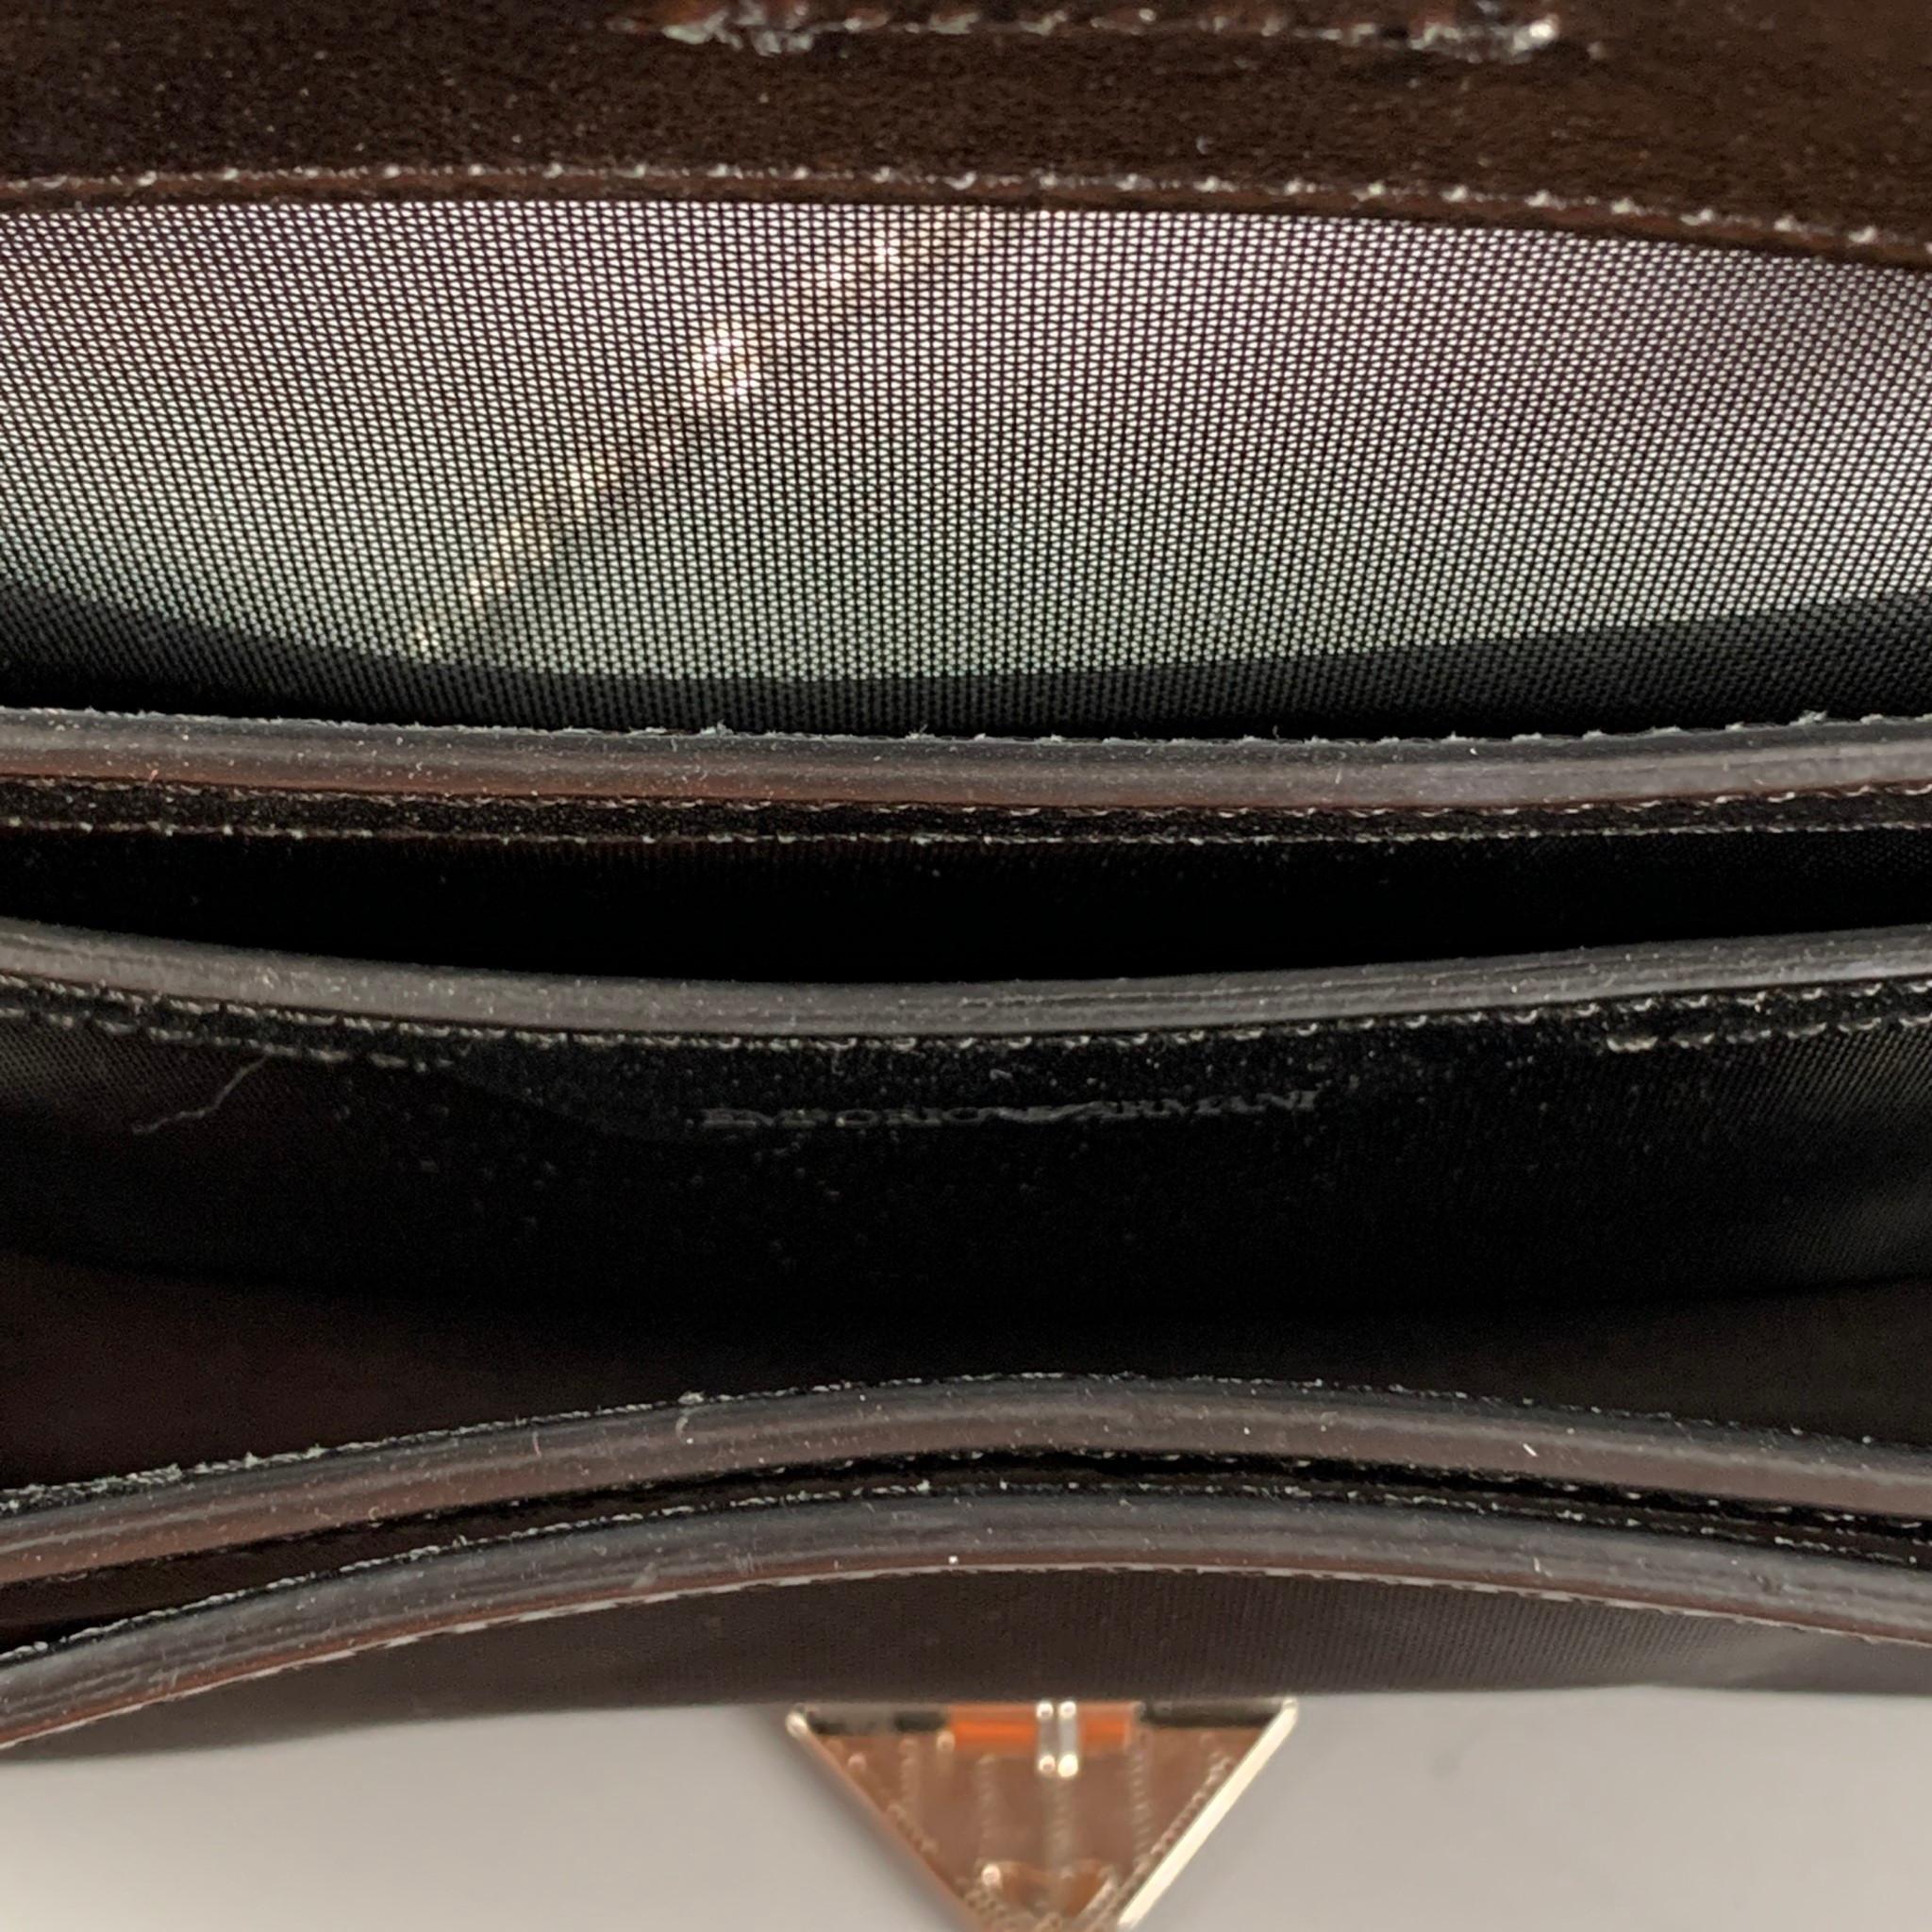 EMPORIO ARMANI Black Silver Mesh Leather Nylon Handbag 2